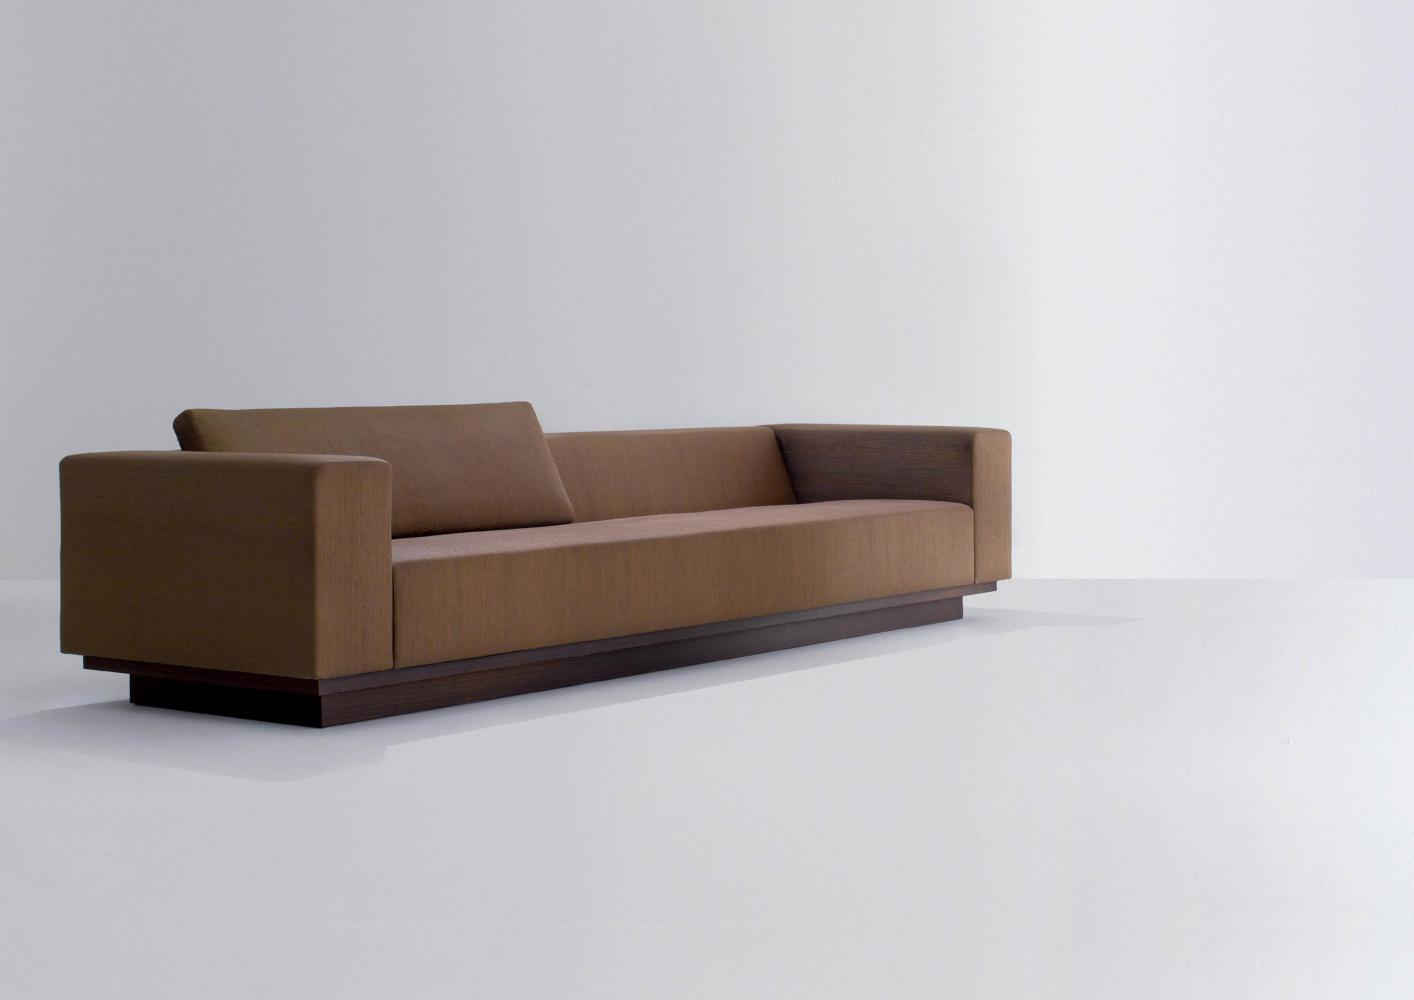 laurameroni orchestra system modular sofa adagio in fine leather, velvet or fabric